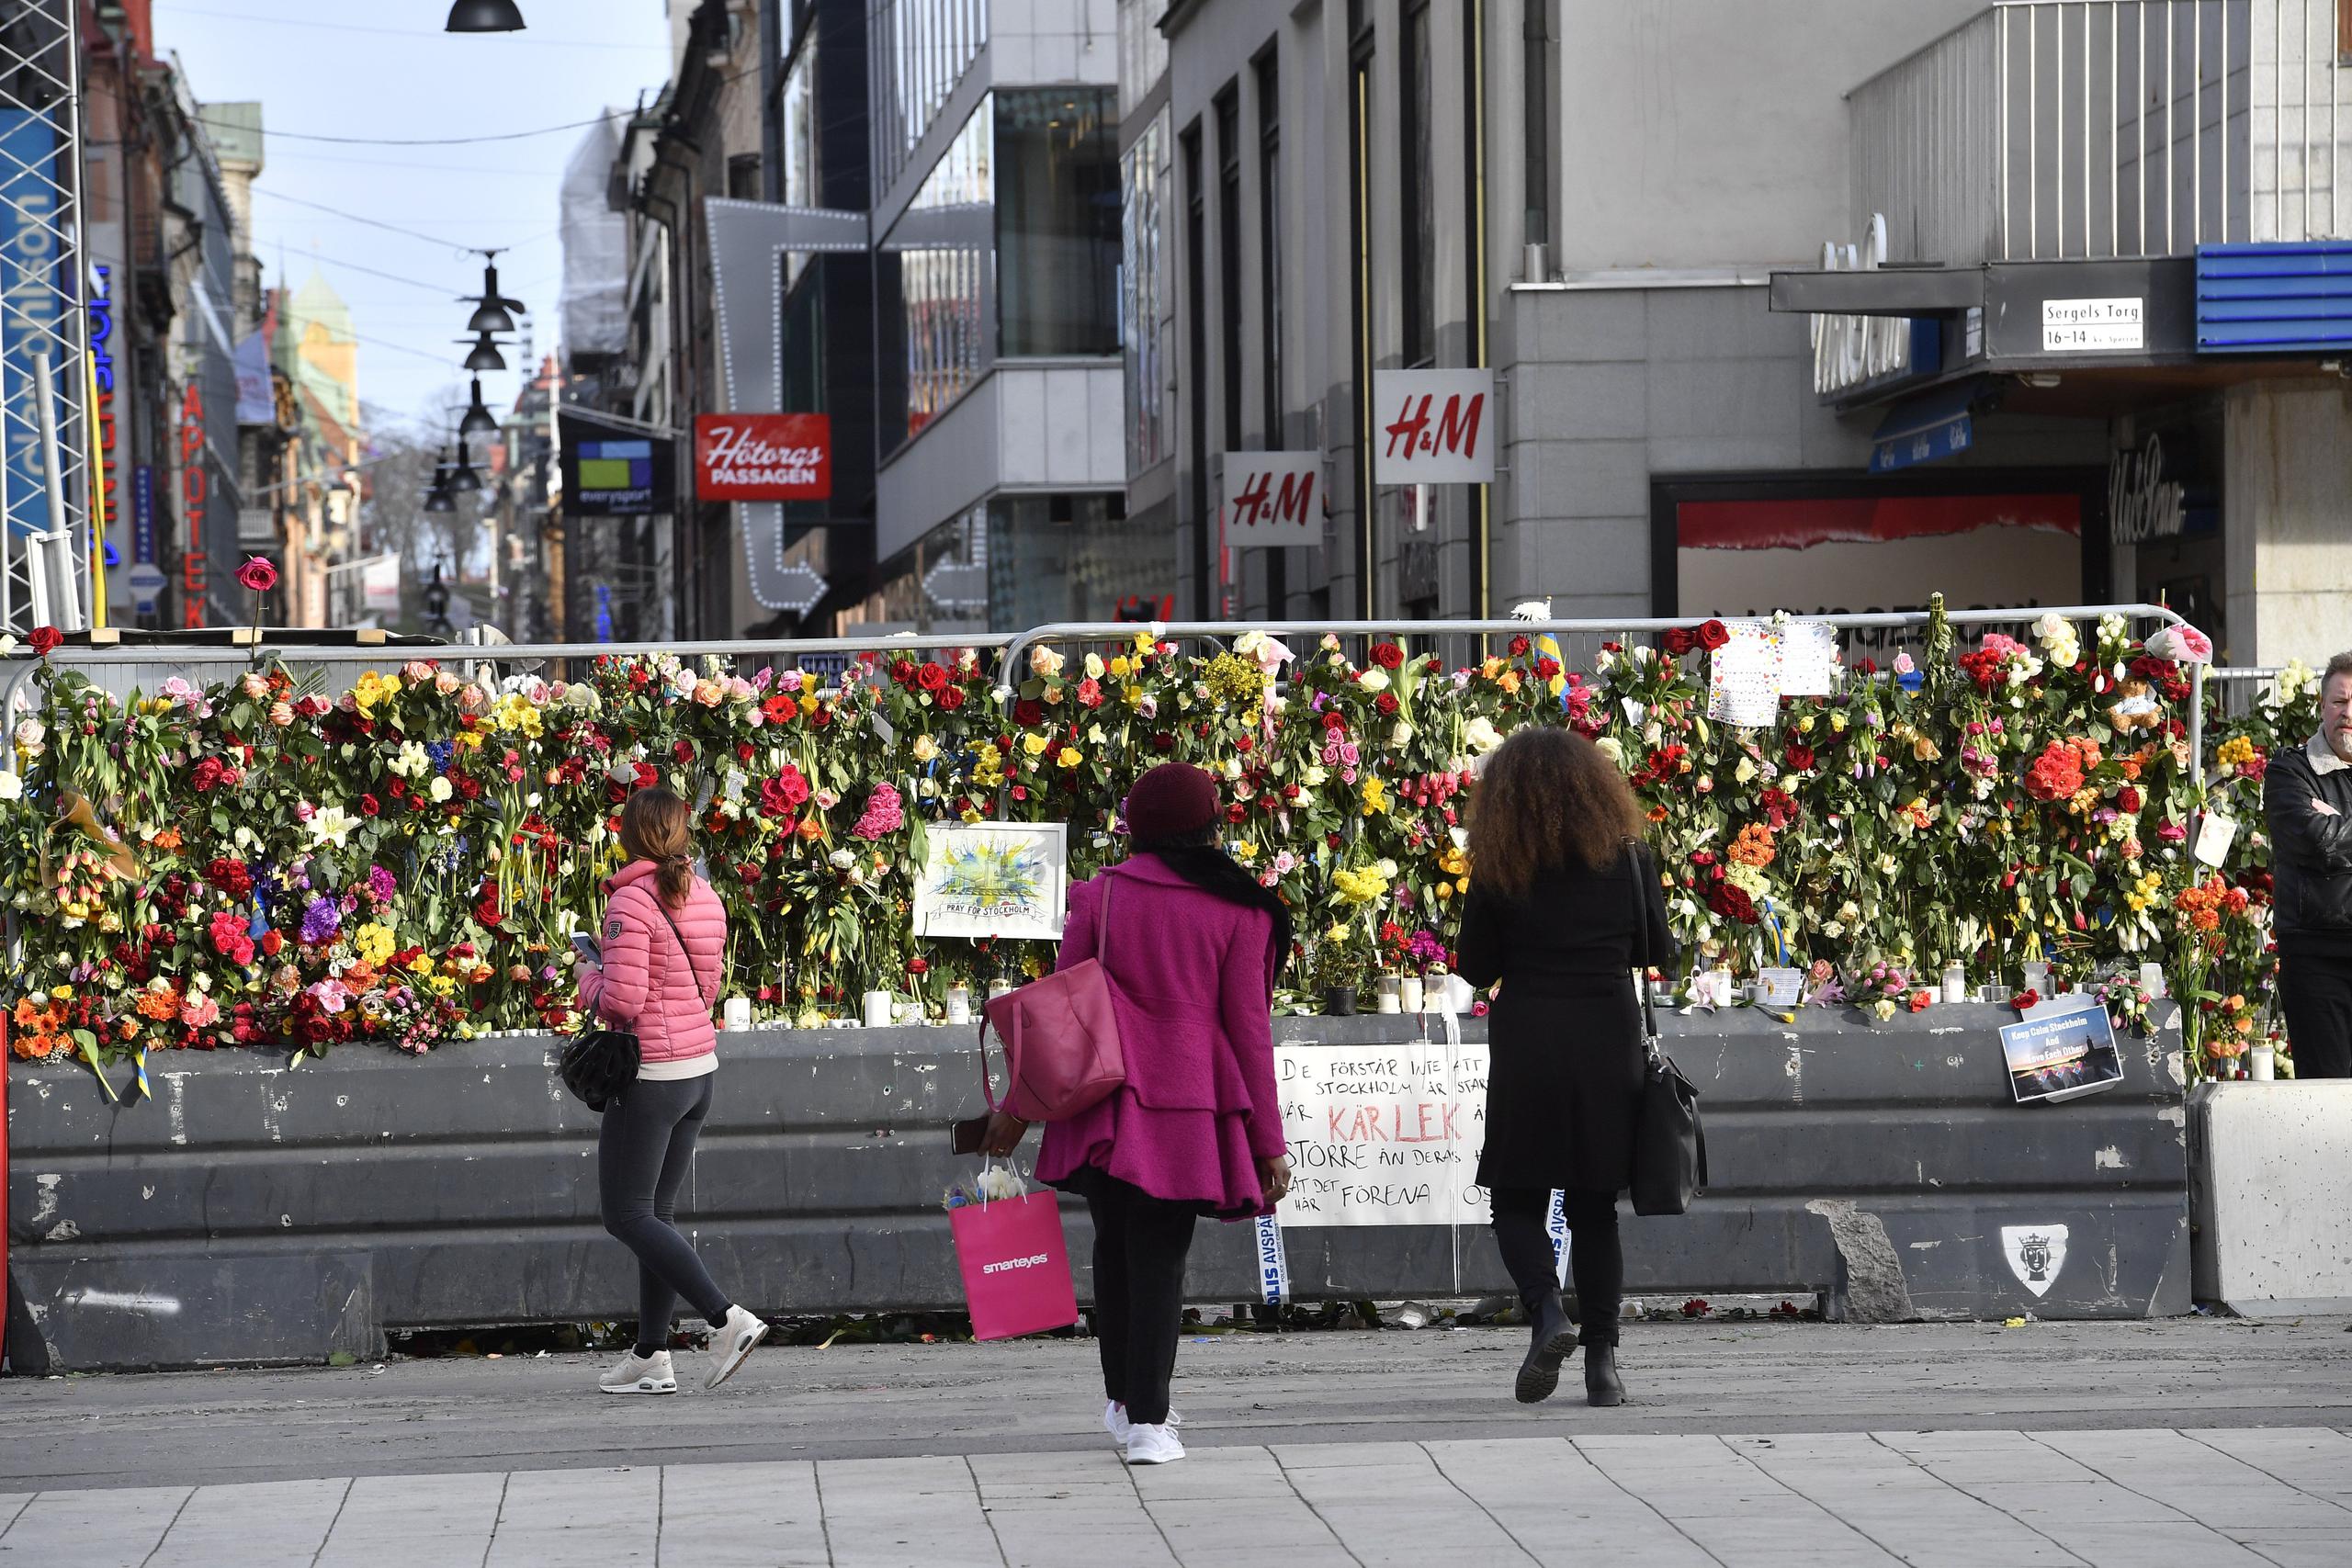 Miles de flores han sido depositadas en un monumento de recuerdo improvisado en una calle de Estocolomo cercana a la tienda. (AP)